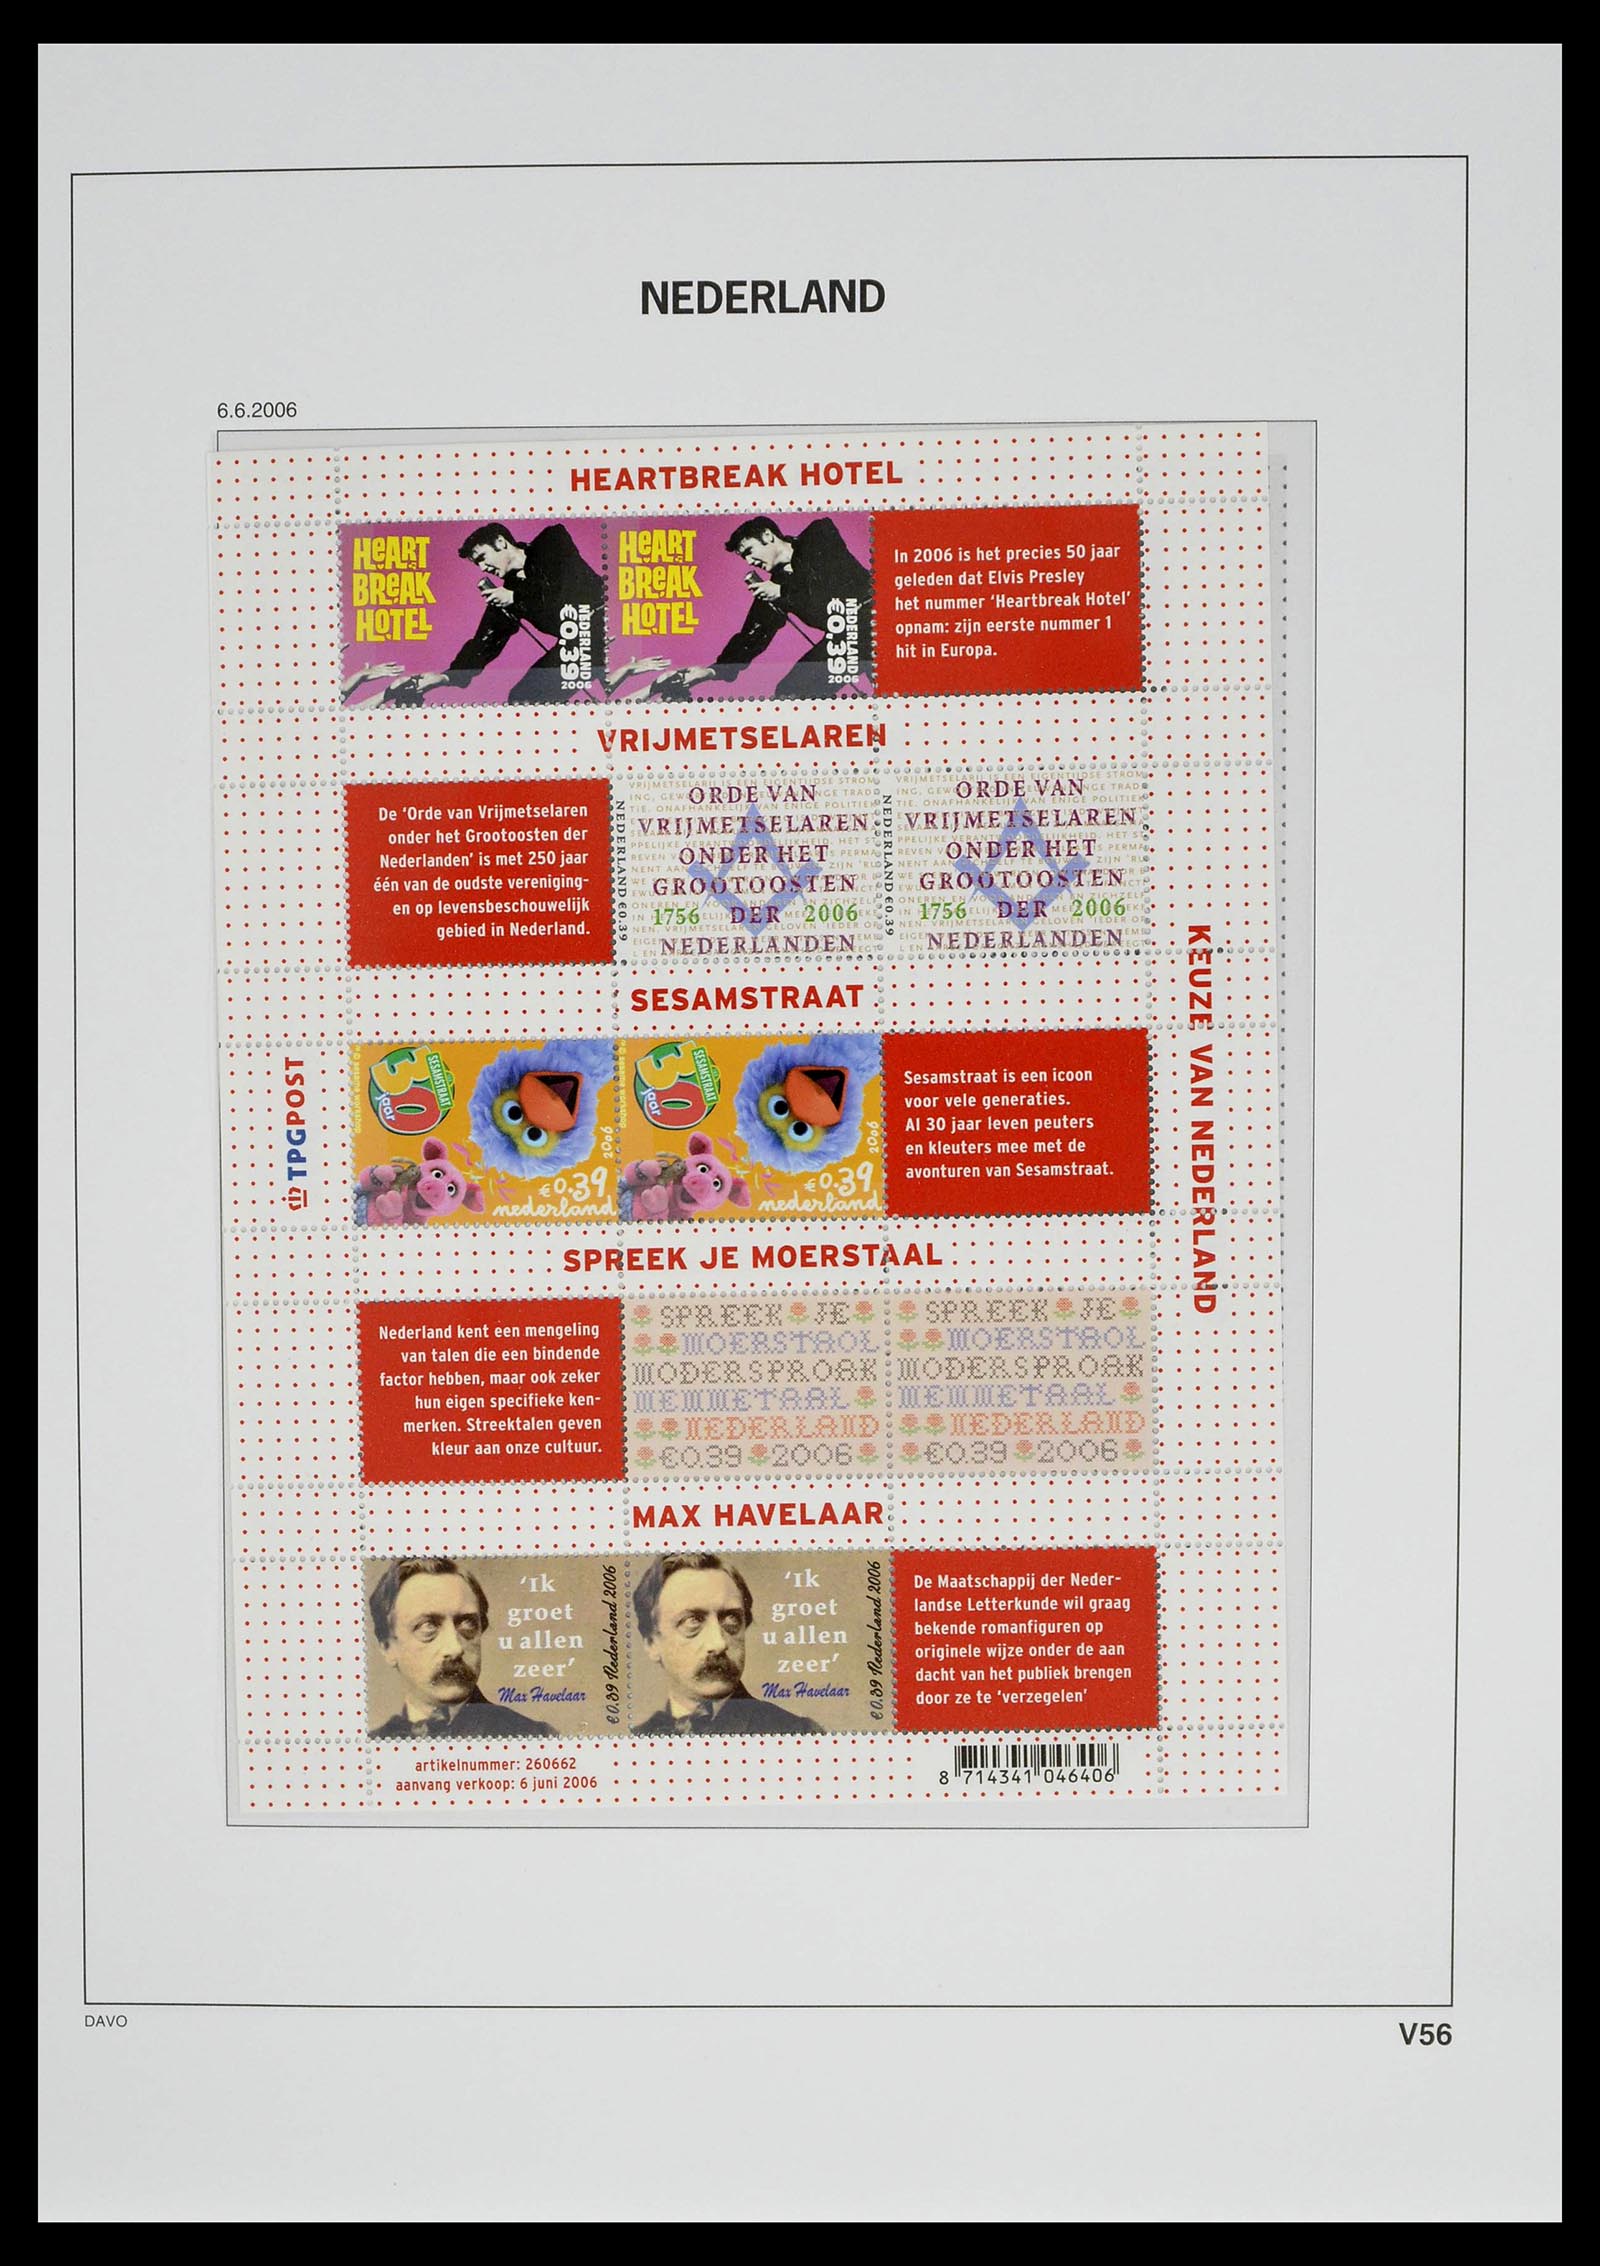 39134 0070 - Stamp collection 39134 Netherlands sheetlets 1992-2019!